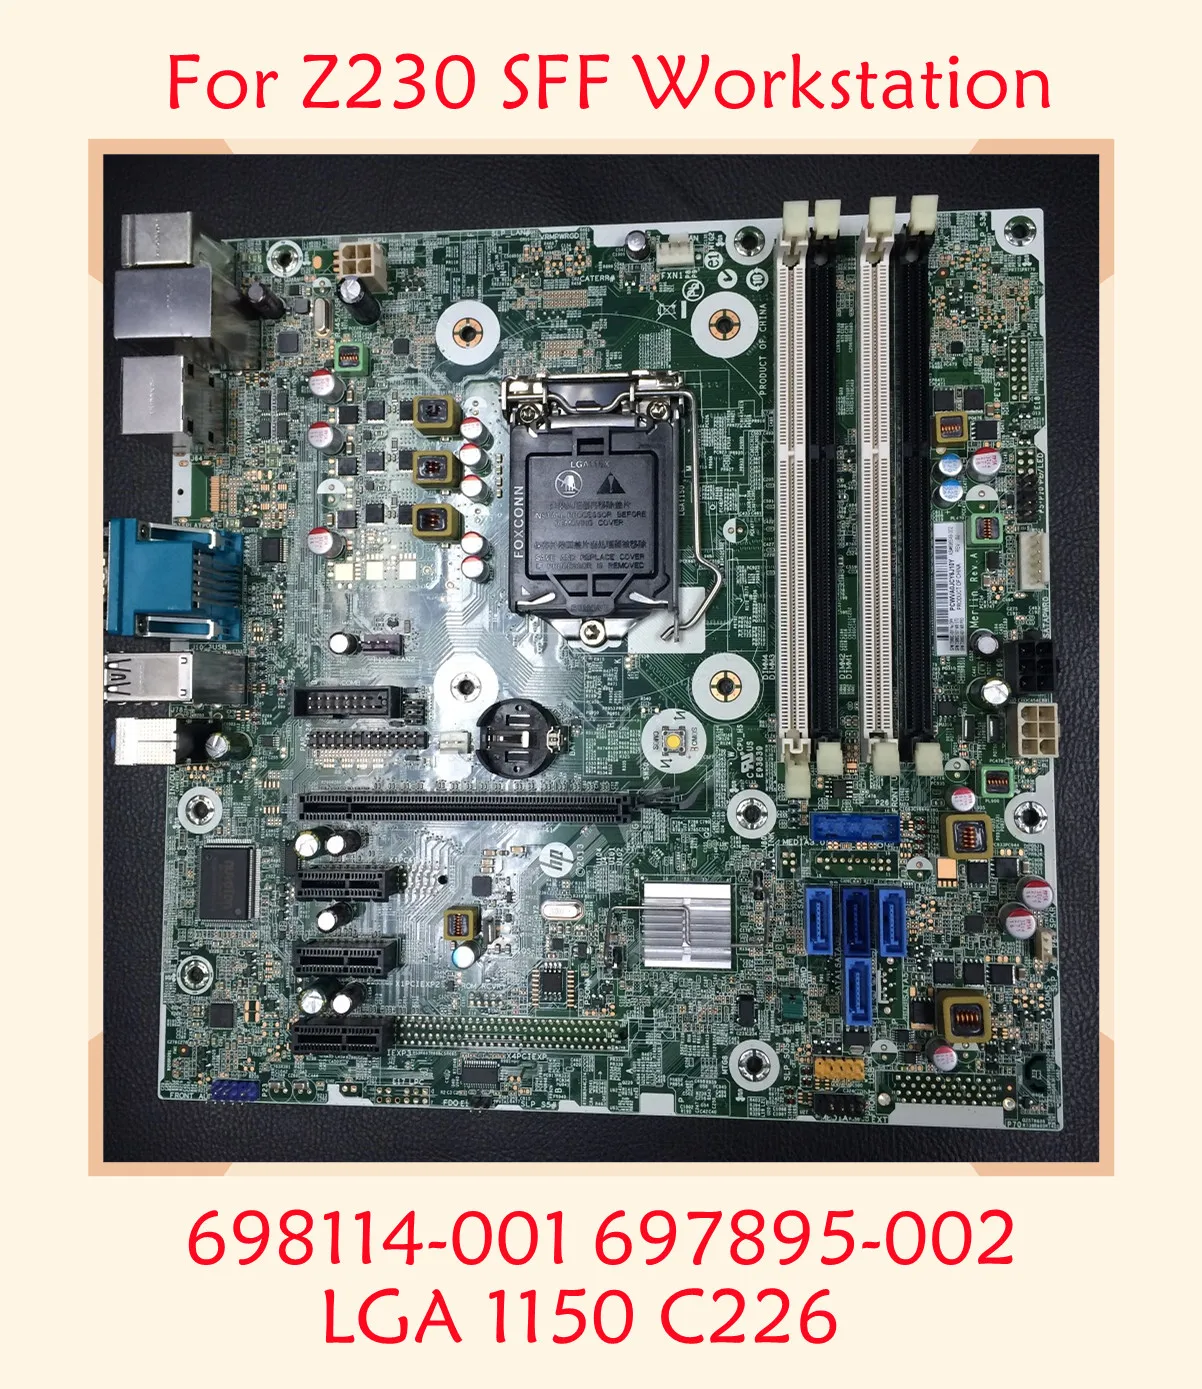 

GZ855 For HP Z230 SFF Workstation Desktop Motherboard 698114-001 697895-002 LGA 1150 C226